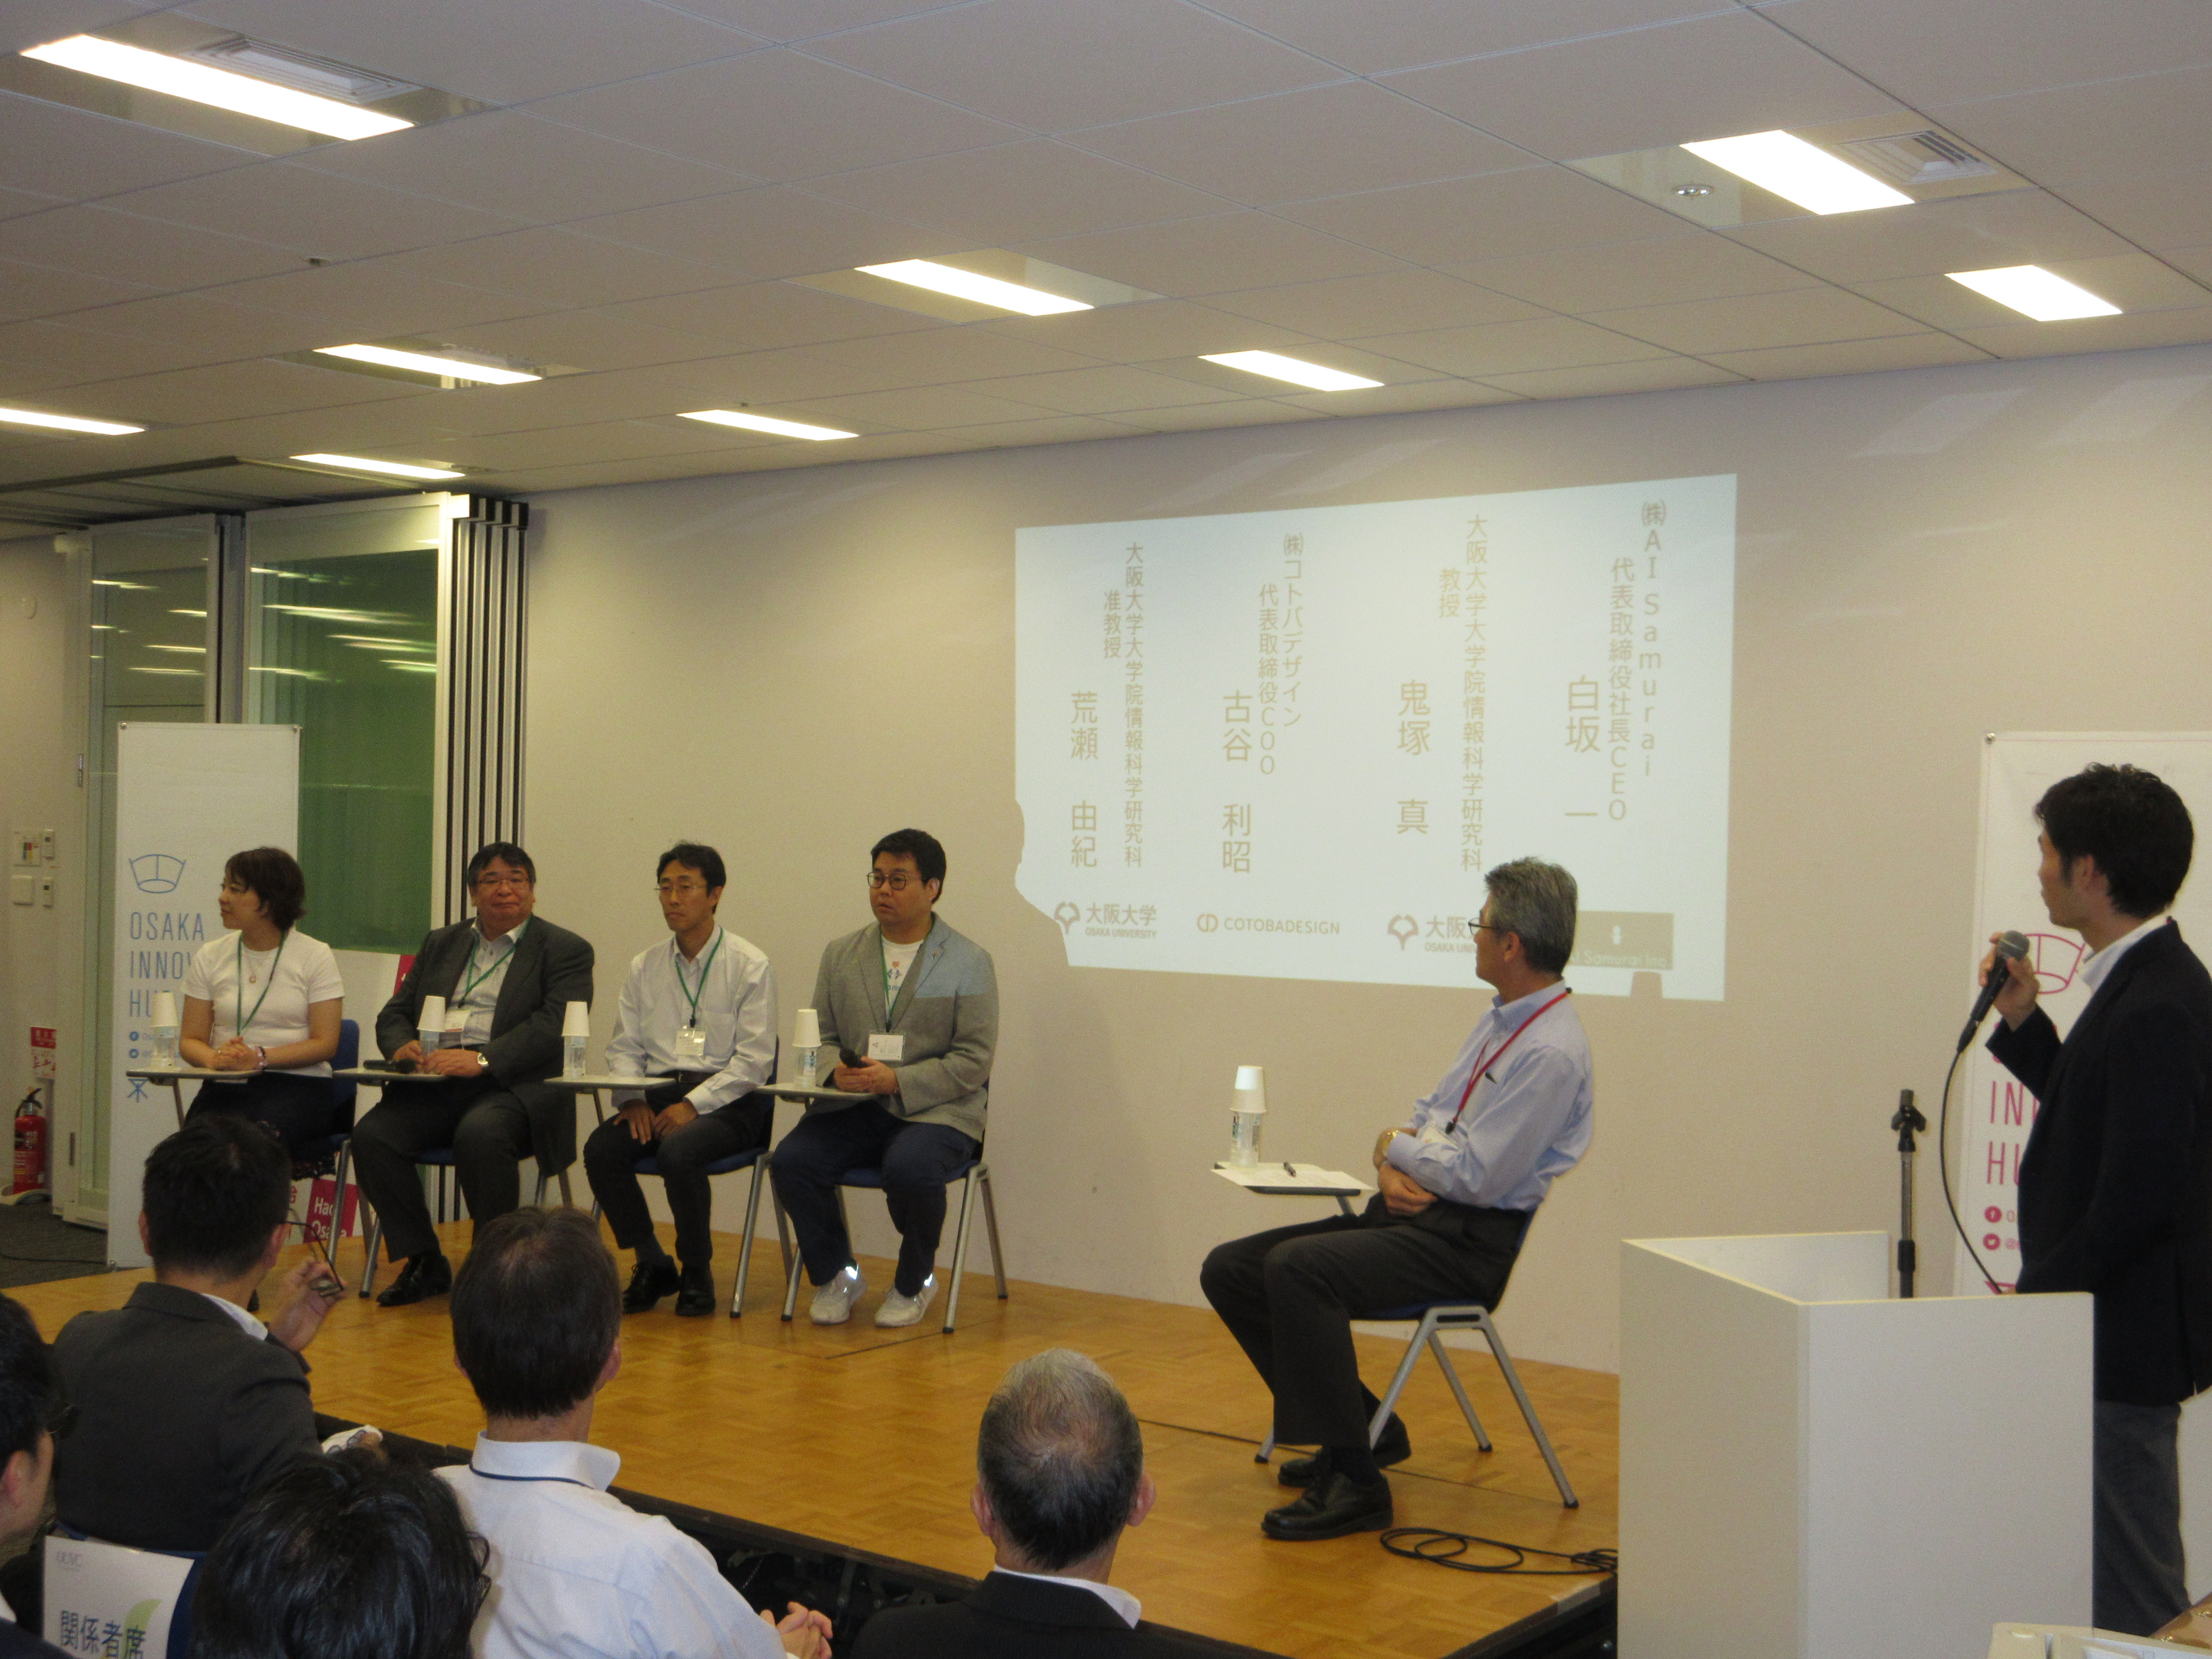 OUVC Meet Up #2 「ベンチャーによる阪大AI技術の活用」を開催しました